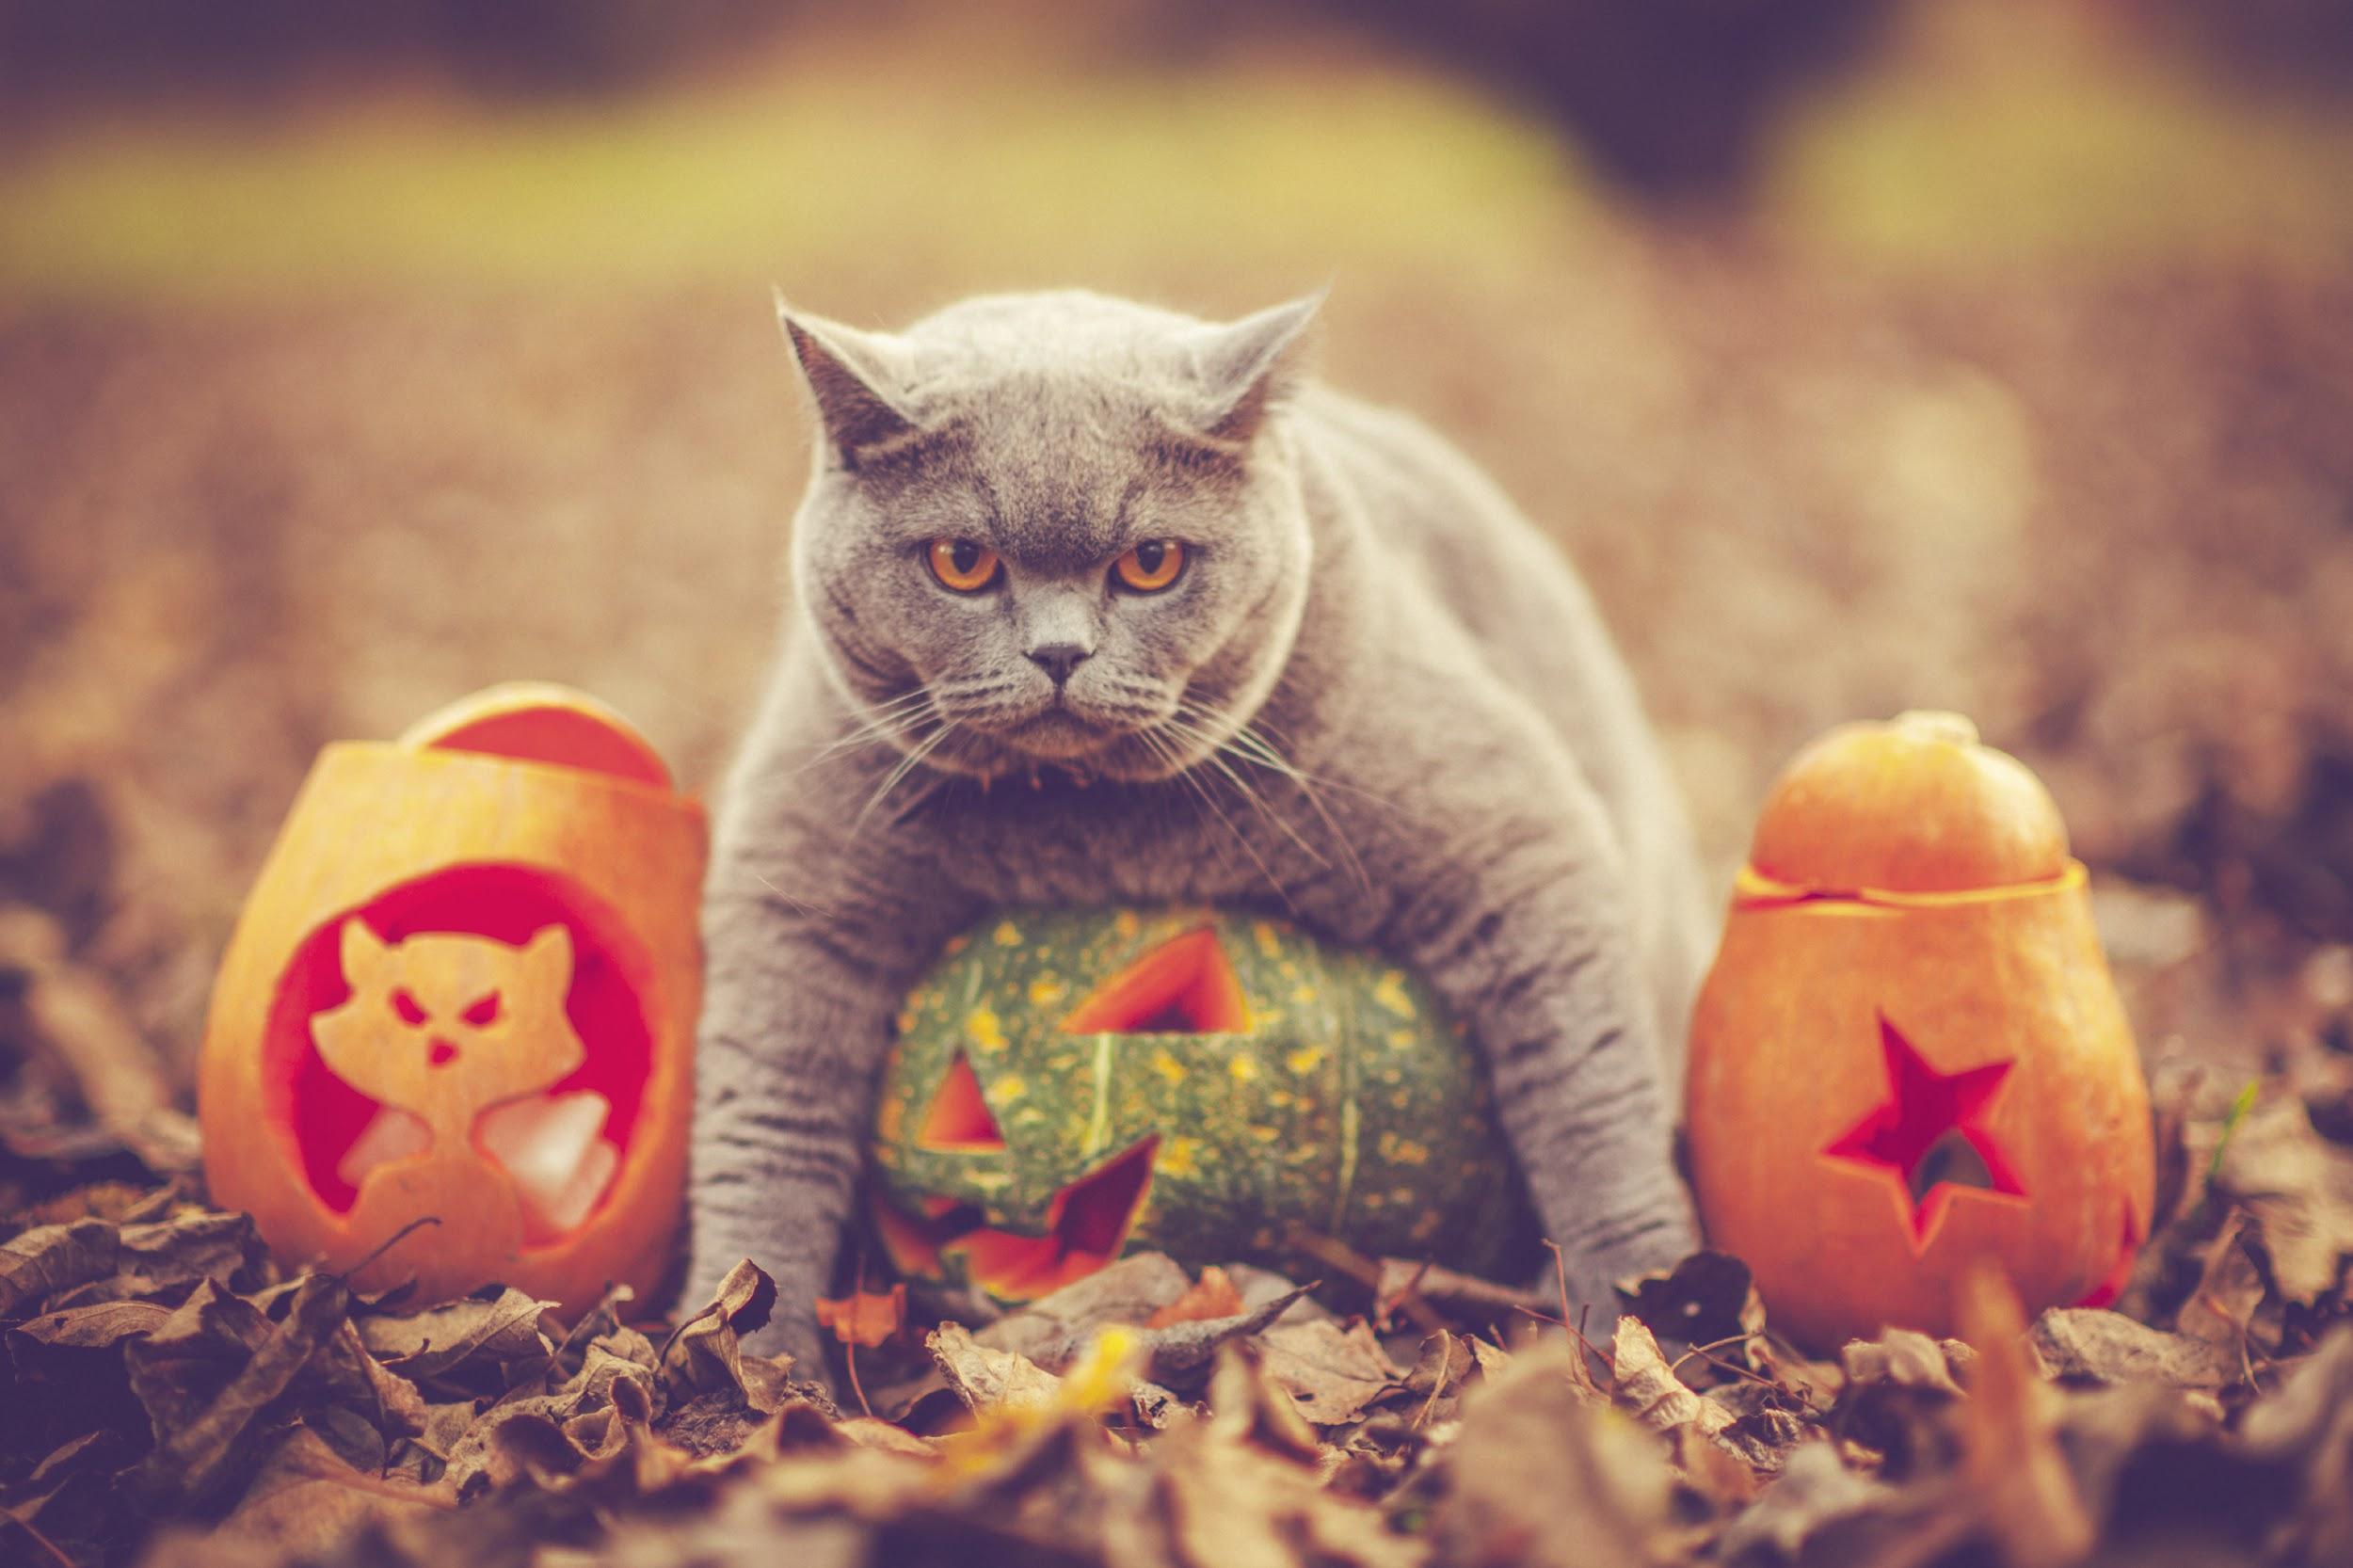 A cat with several pumpkins